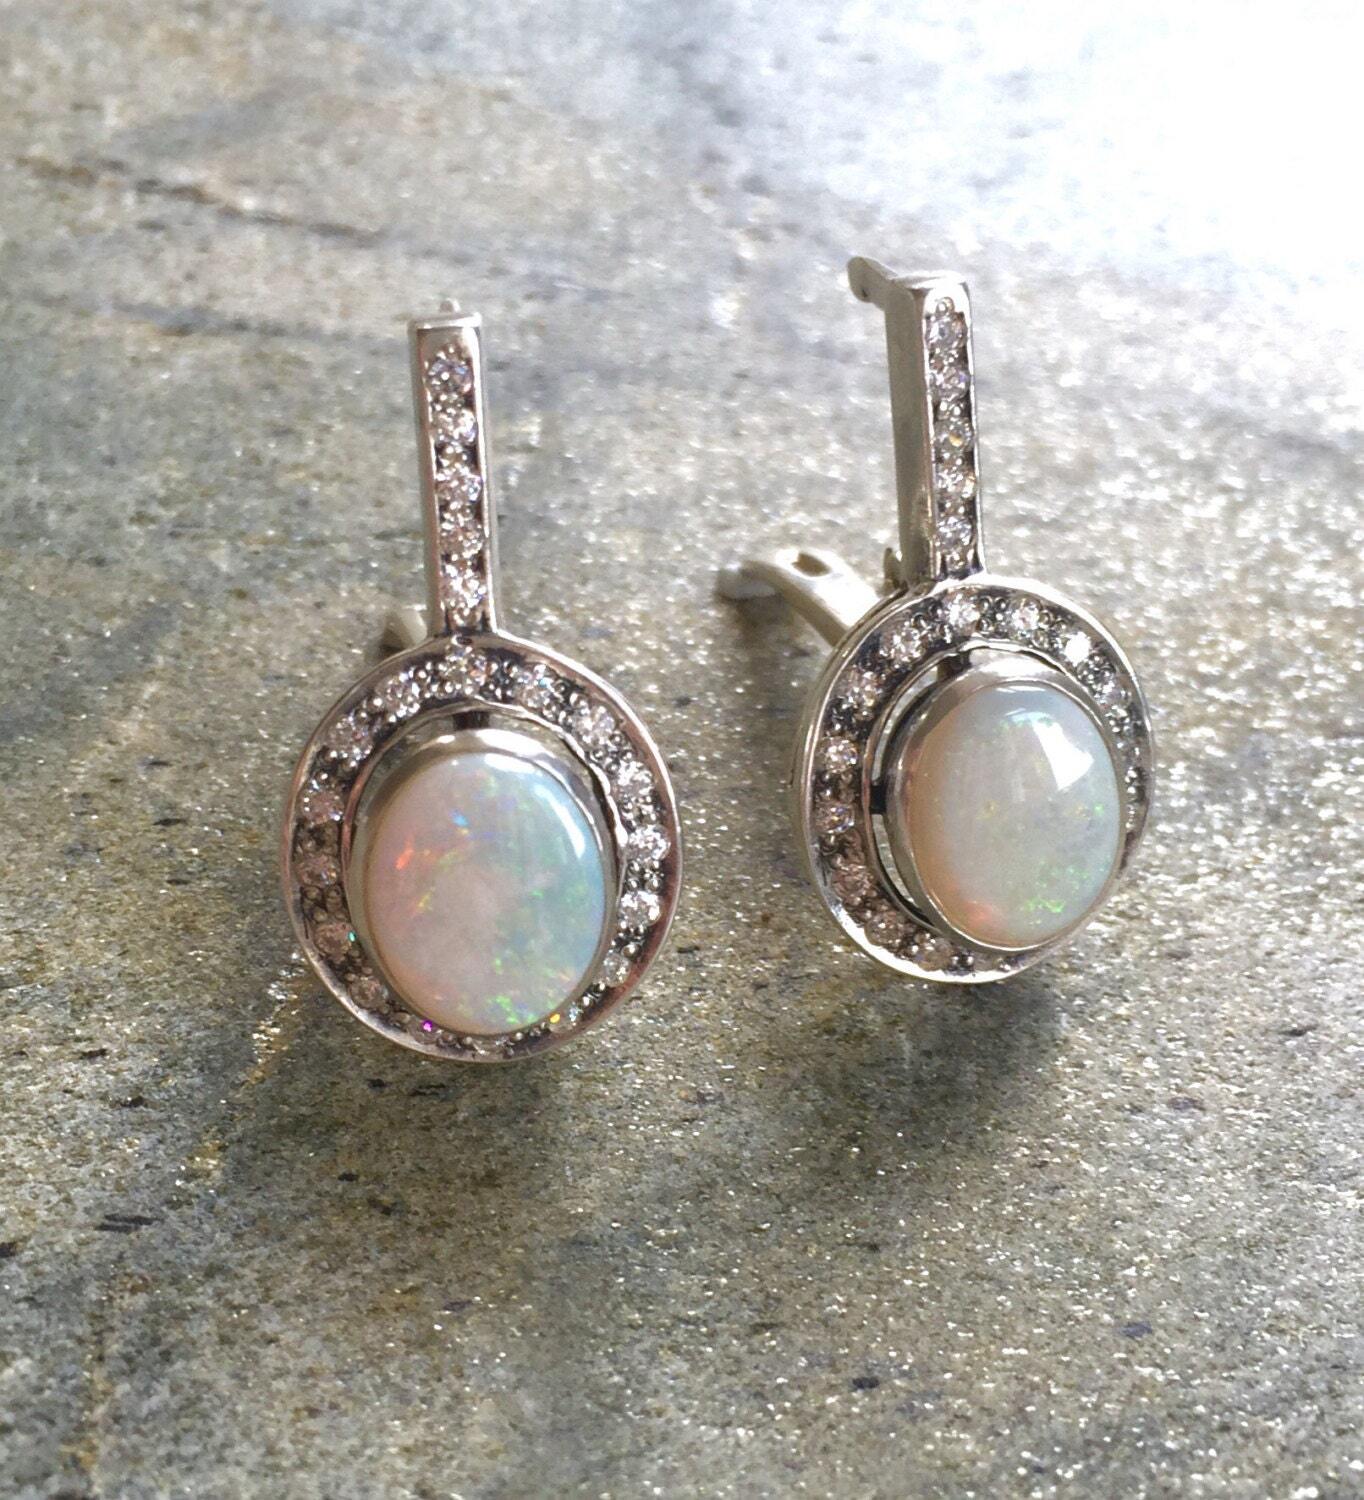 Long Opal Earrings, Natural Opal, Antique Earrings, Australian Opal, Vintage Earrings, Oval Earrings, Victorian Earrings, Silver Earrings